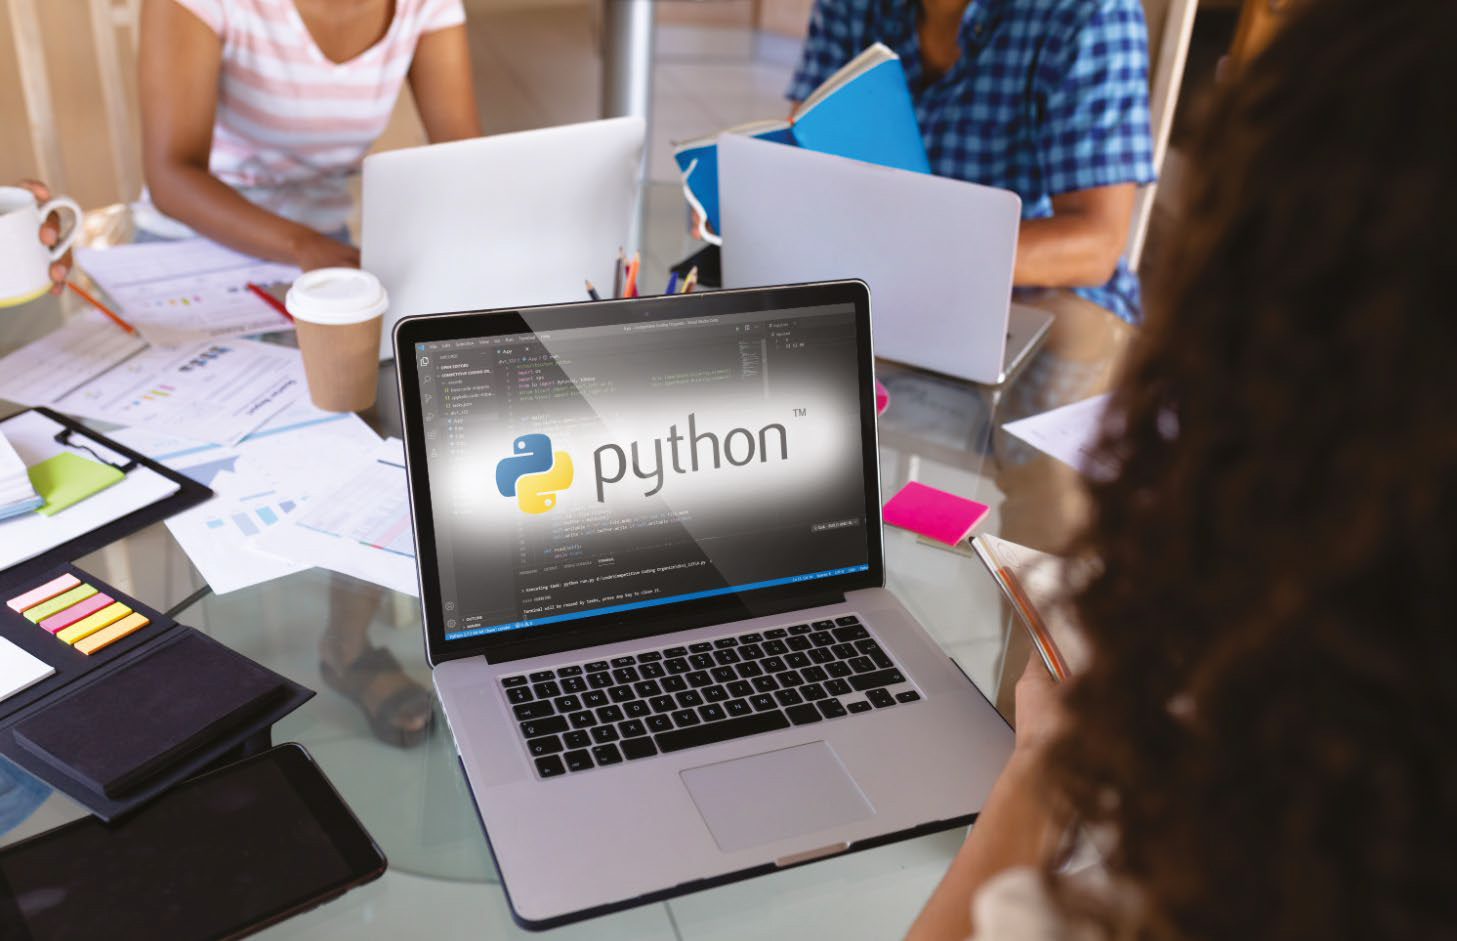 Python Training